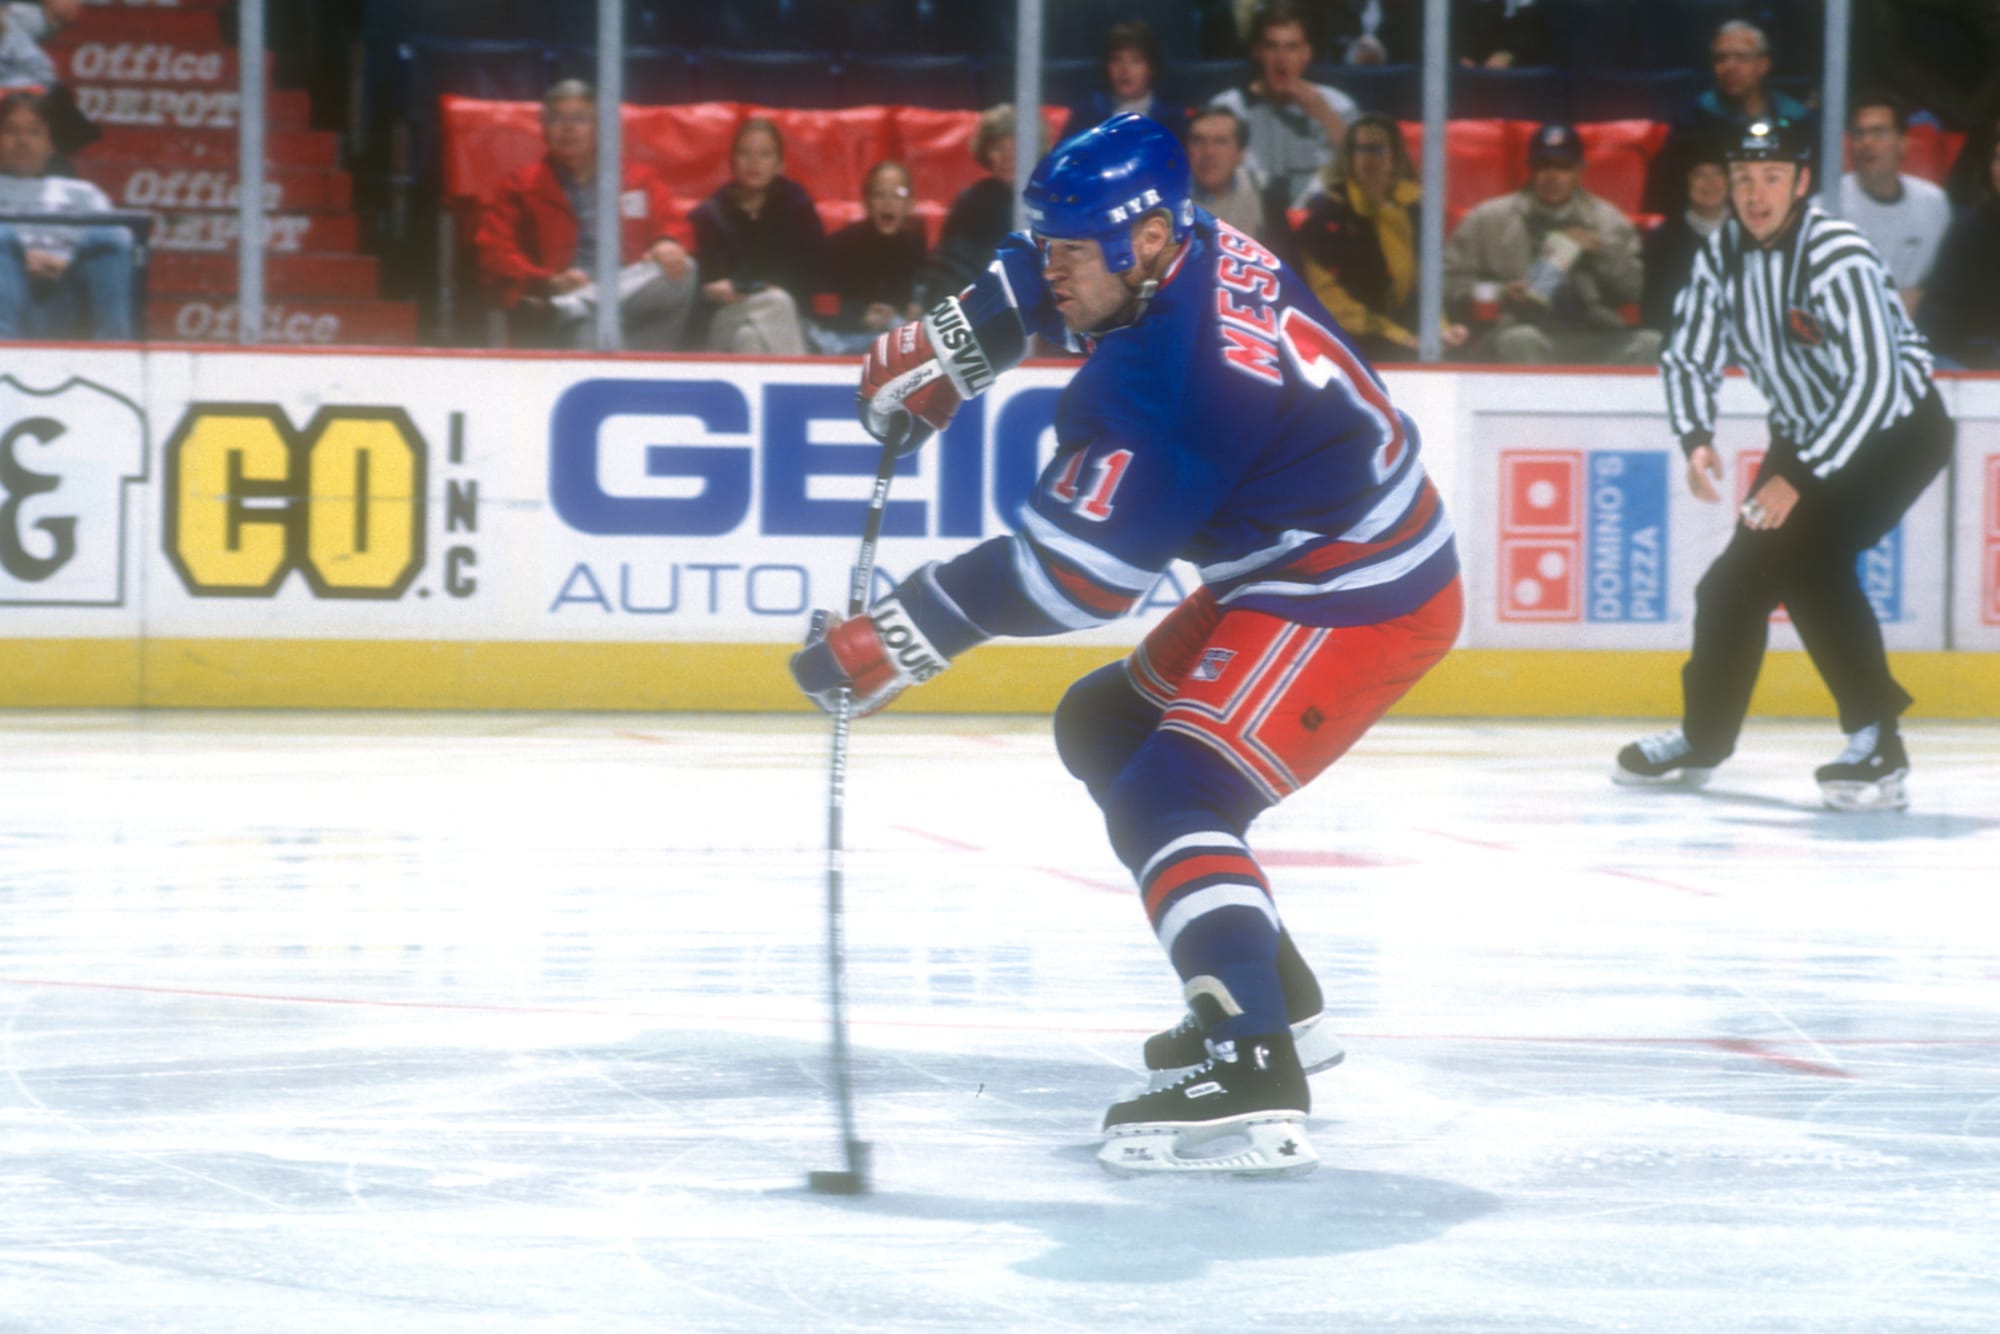 On September 5 in New York Rangers history: Mark Messier's last